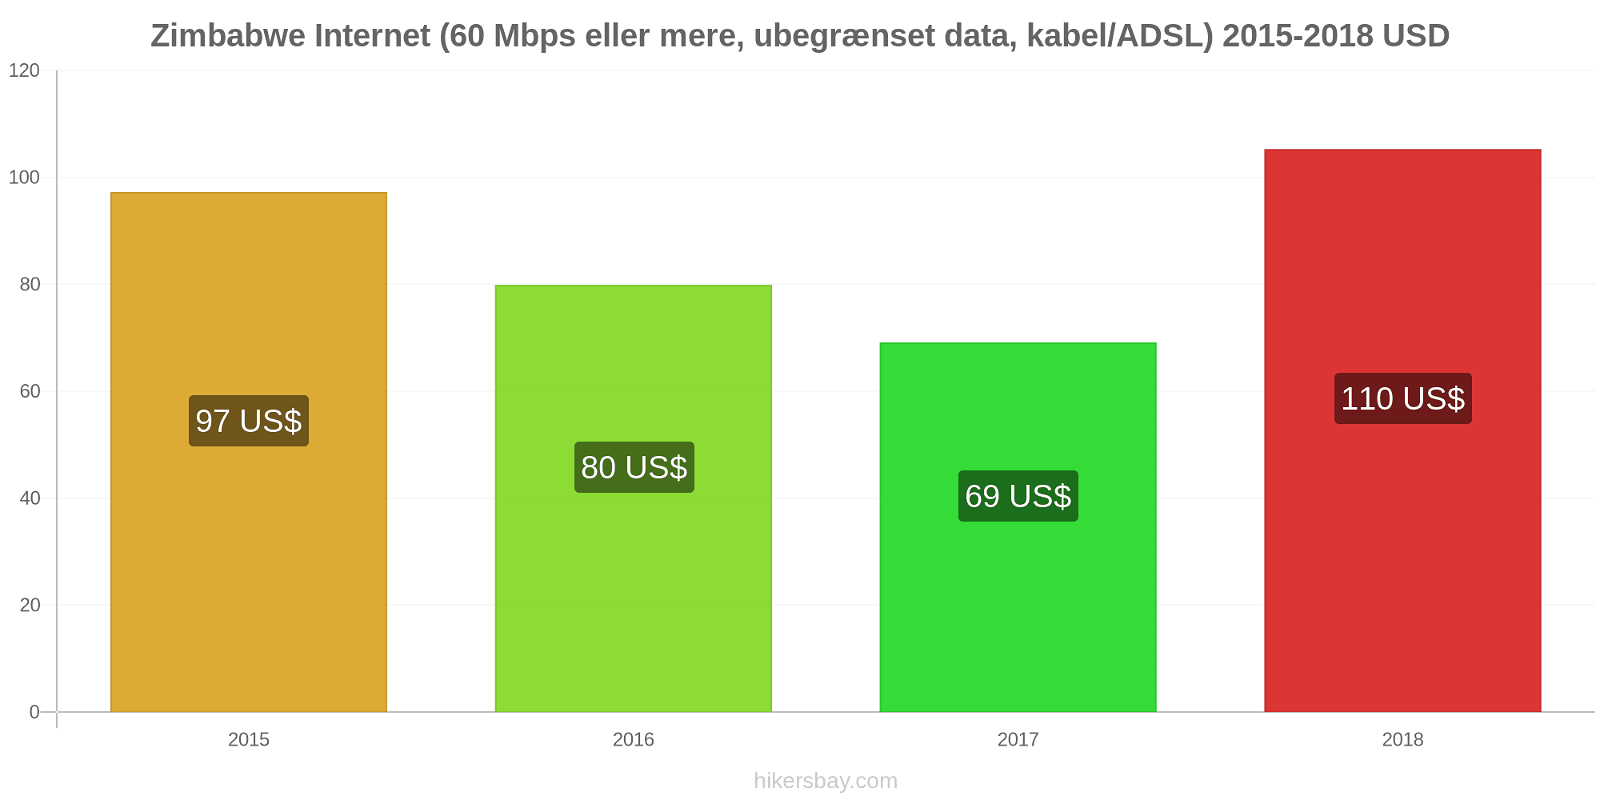 Zimbabwe prisændringer Internet (60 Mbps eller mere, ubegrænset data, kabel/ADSL) hikersbay.com